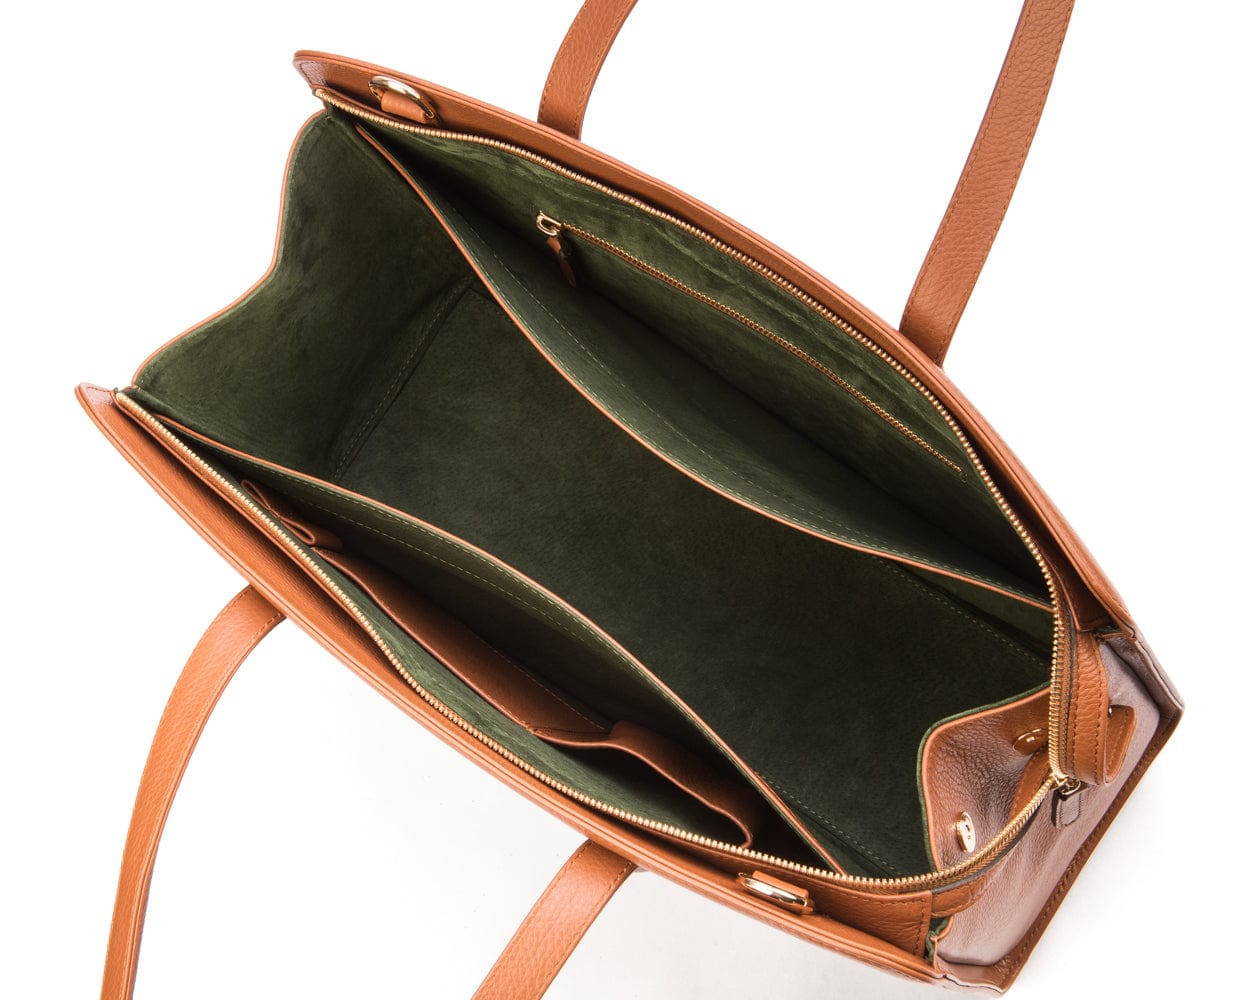 Ladies' leather 15" laptop handbag, brown, inside